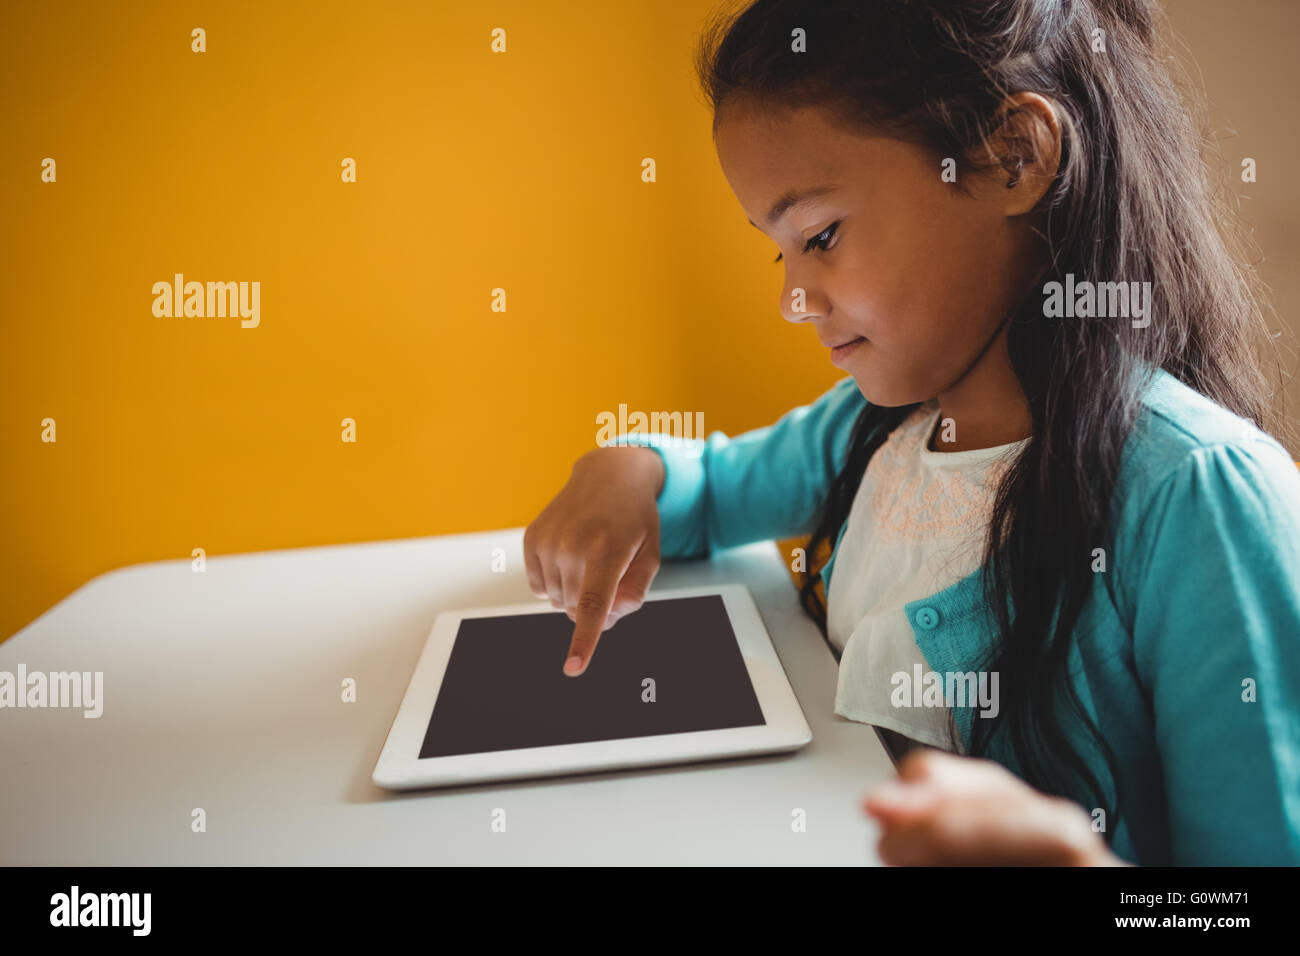 Une petite fille à l'aide d'une tablette Banque D'Images